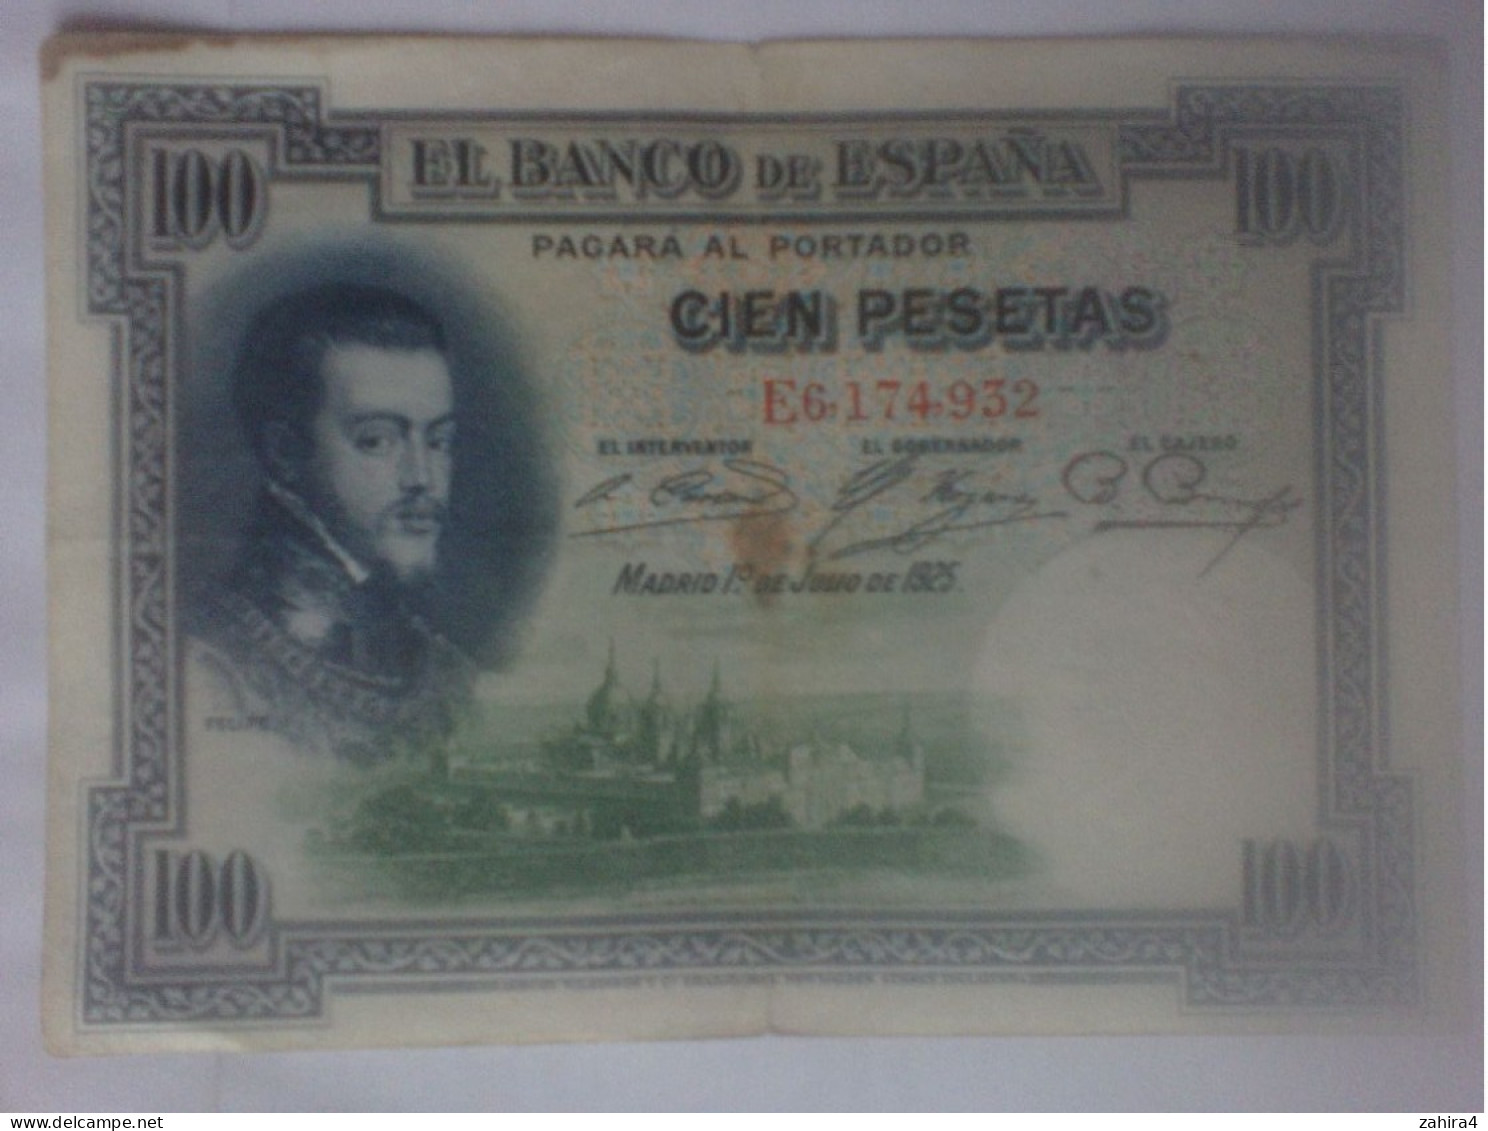 El Banco De Espana 100 Pesetas - Felipe II - E6,174,932 - 100 Peseten